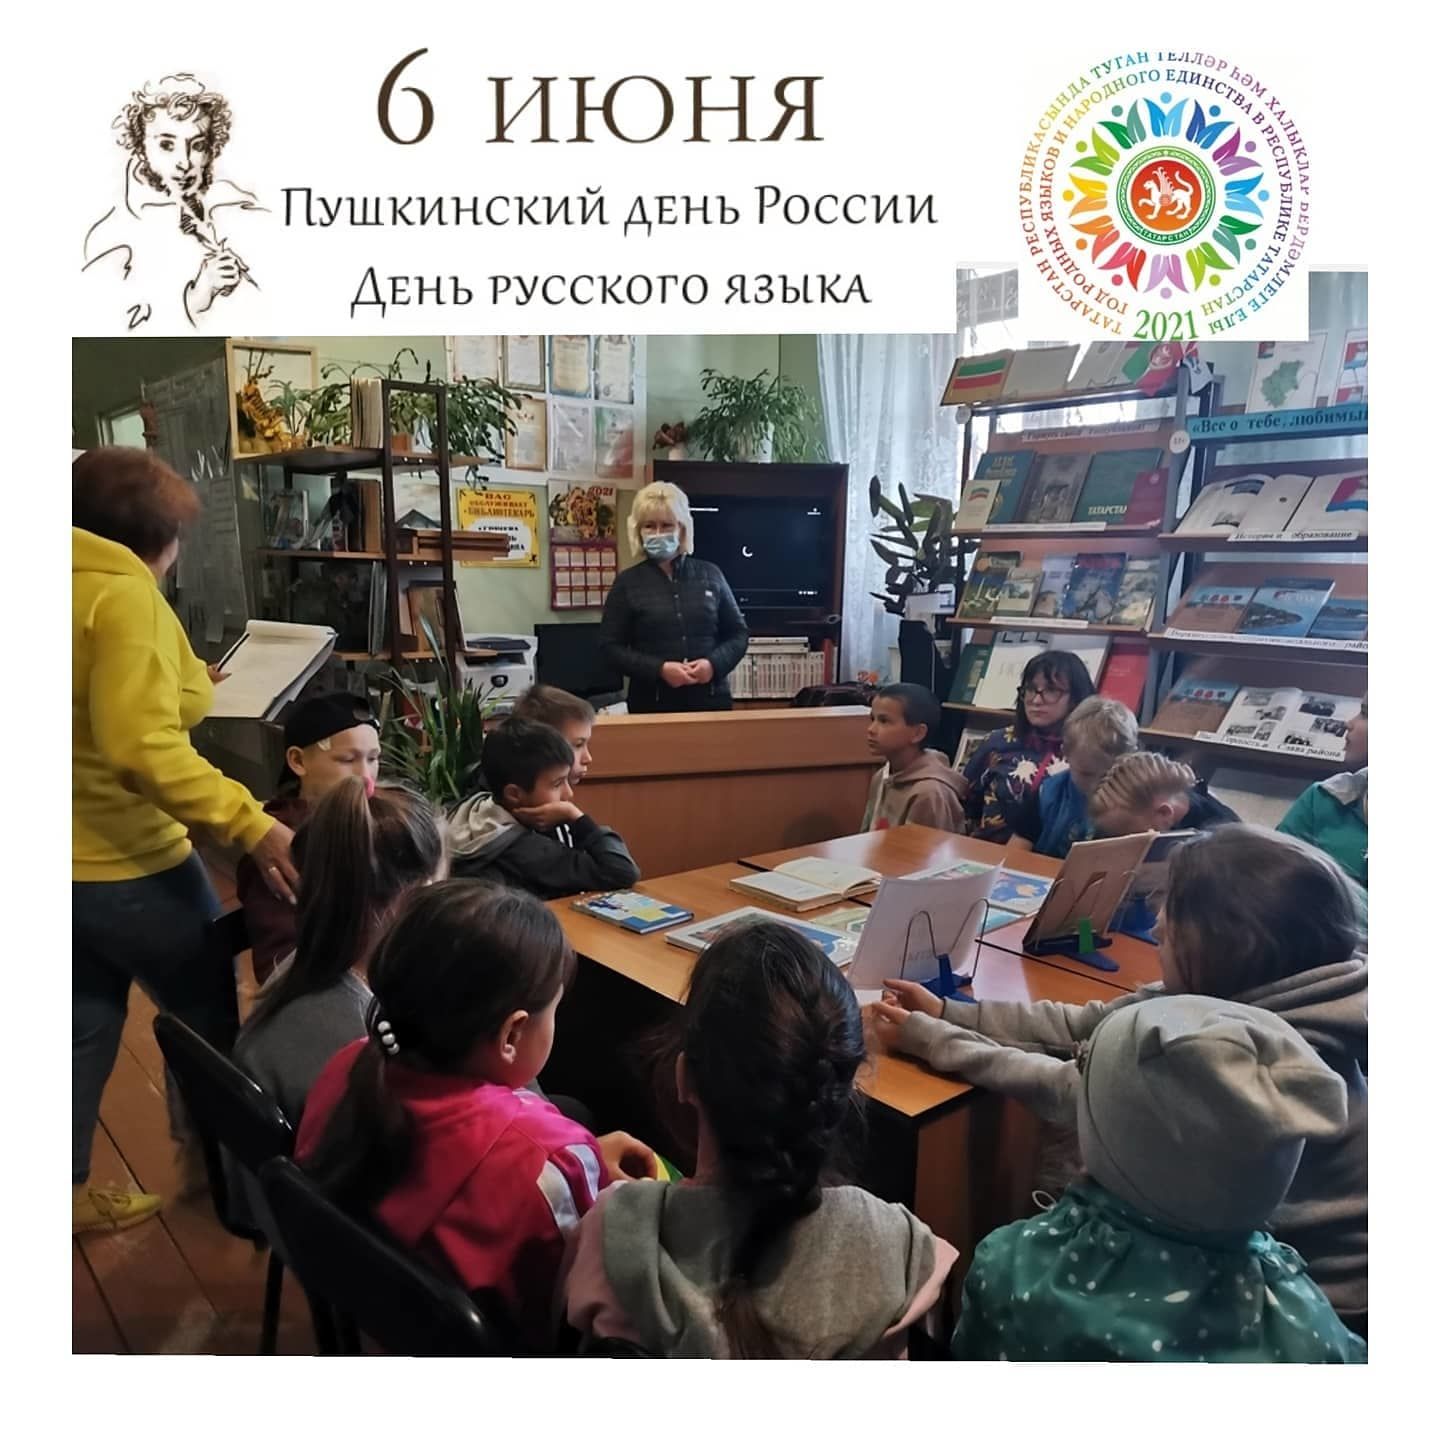 В Коргузинской библиотеке прошел познавательный час, приуроченный дню русского языка